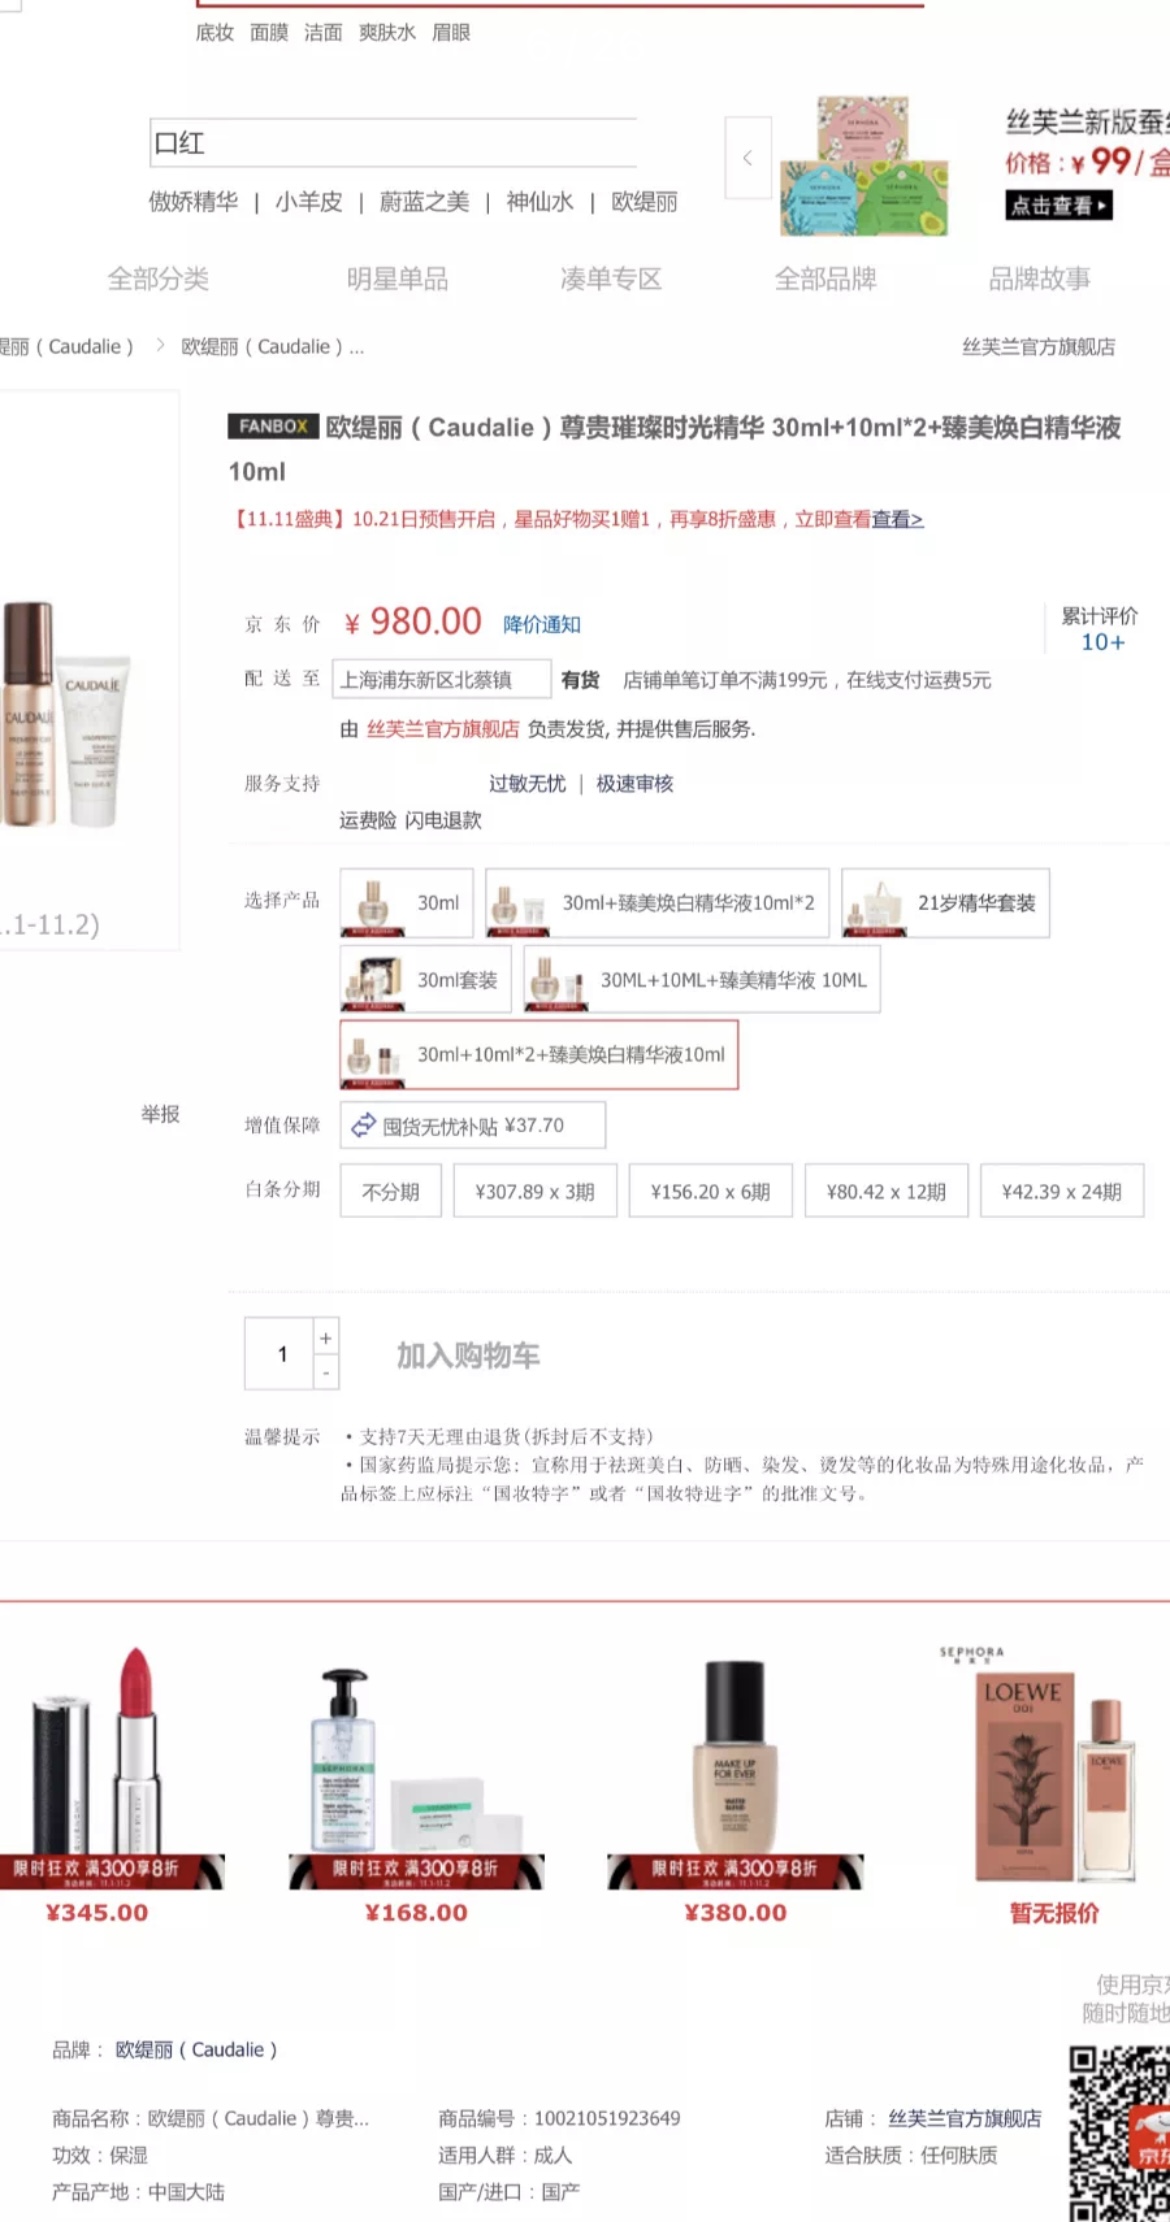 上海公布一批典型虚假违法广告处罚案例：宜家、丝芙兰等被点名